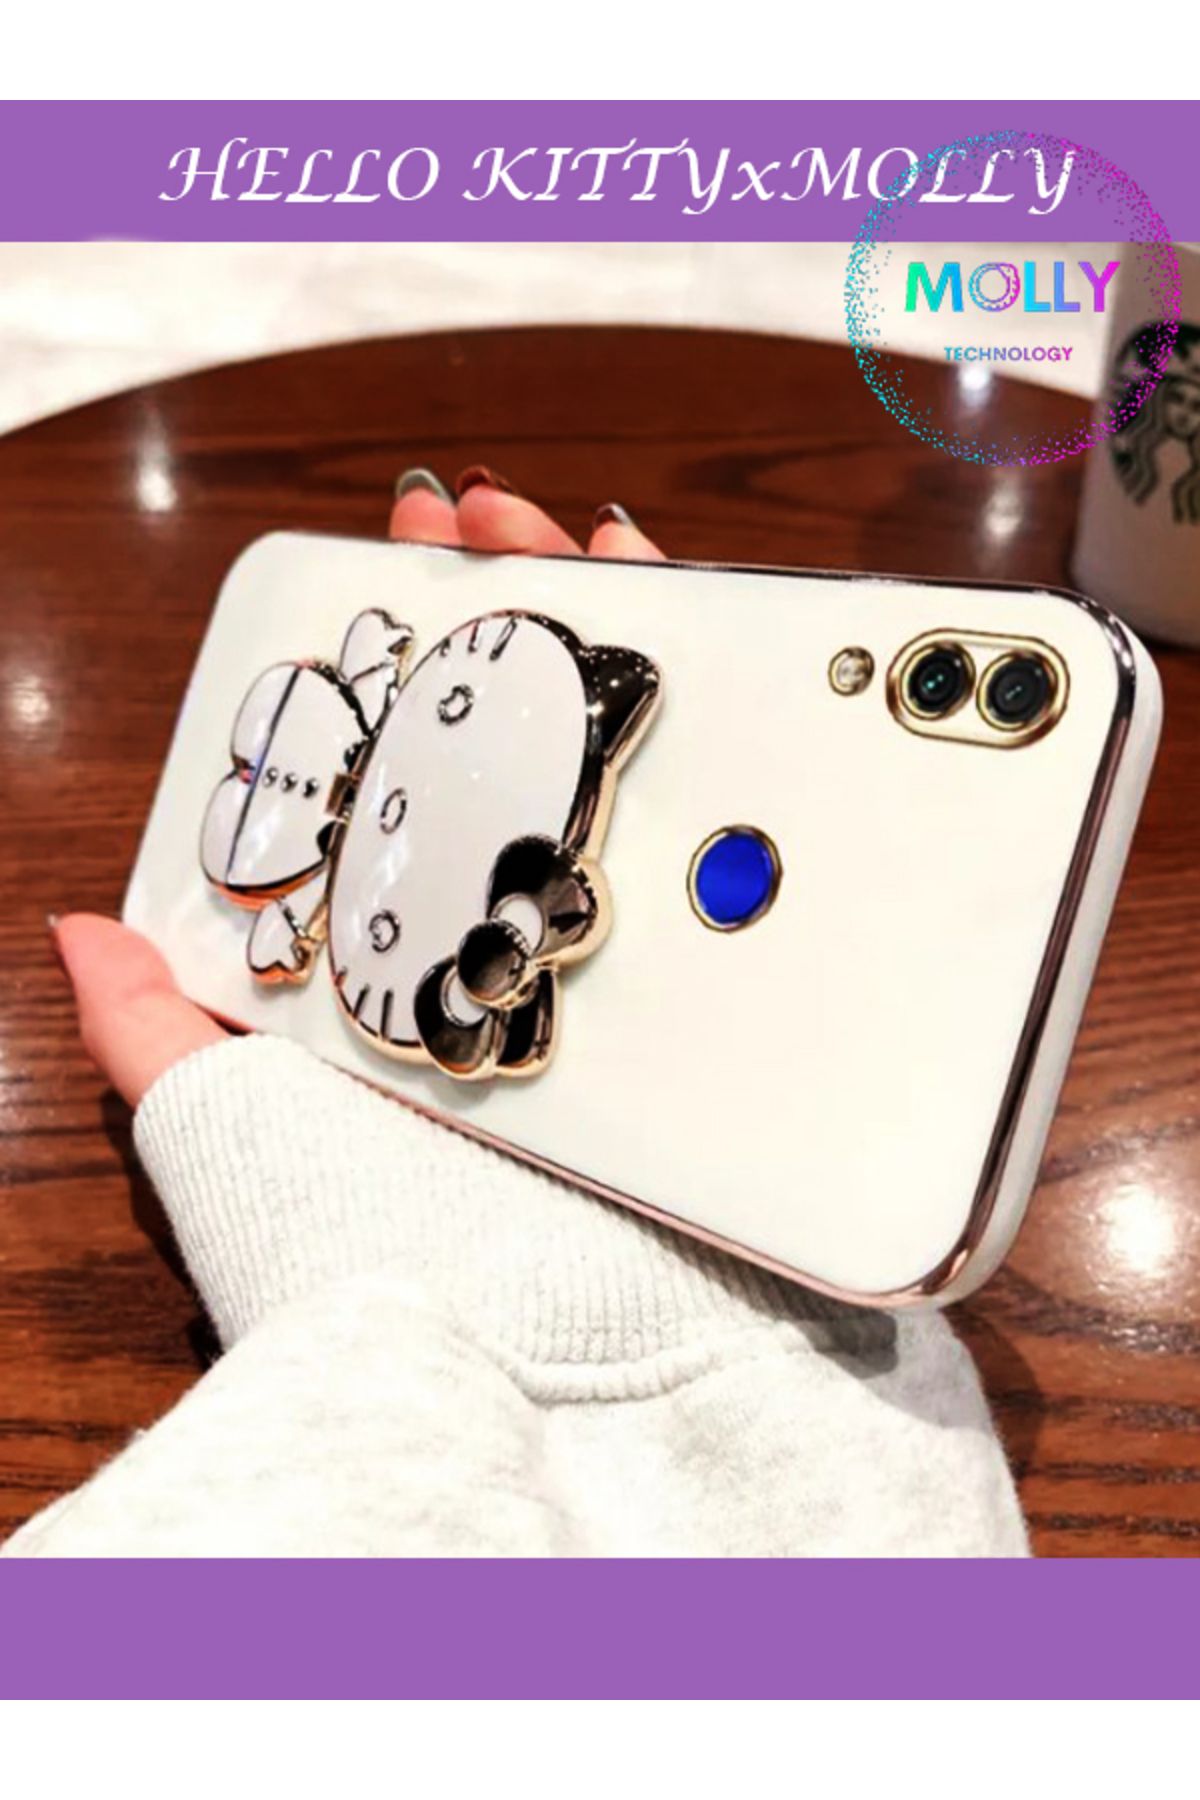 Molly Technology Huawei P Smart 2019 İçin İnci Beyazı Hello Kitty Standlı Kenarları Gold Detaylı Lüks Silikon Kılıf